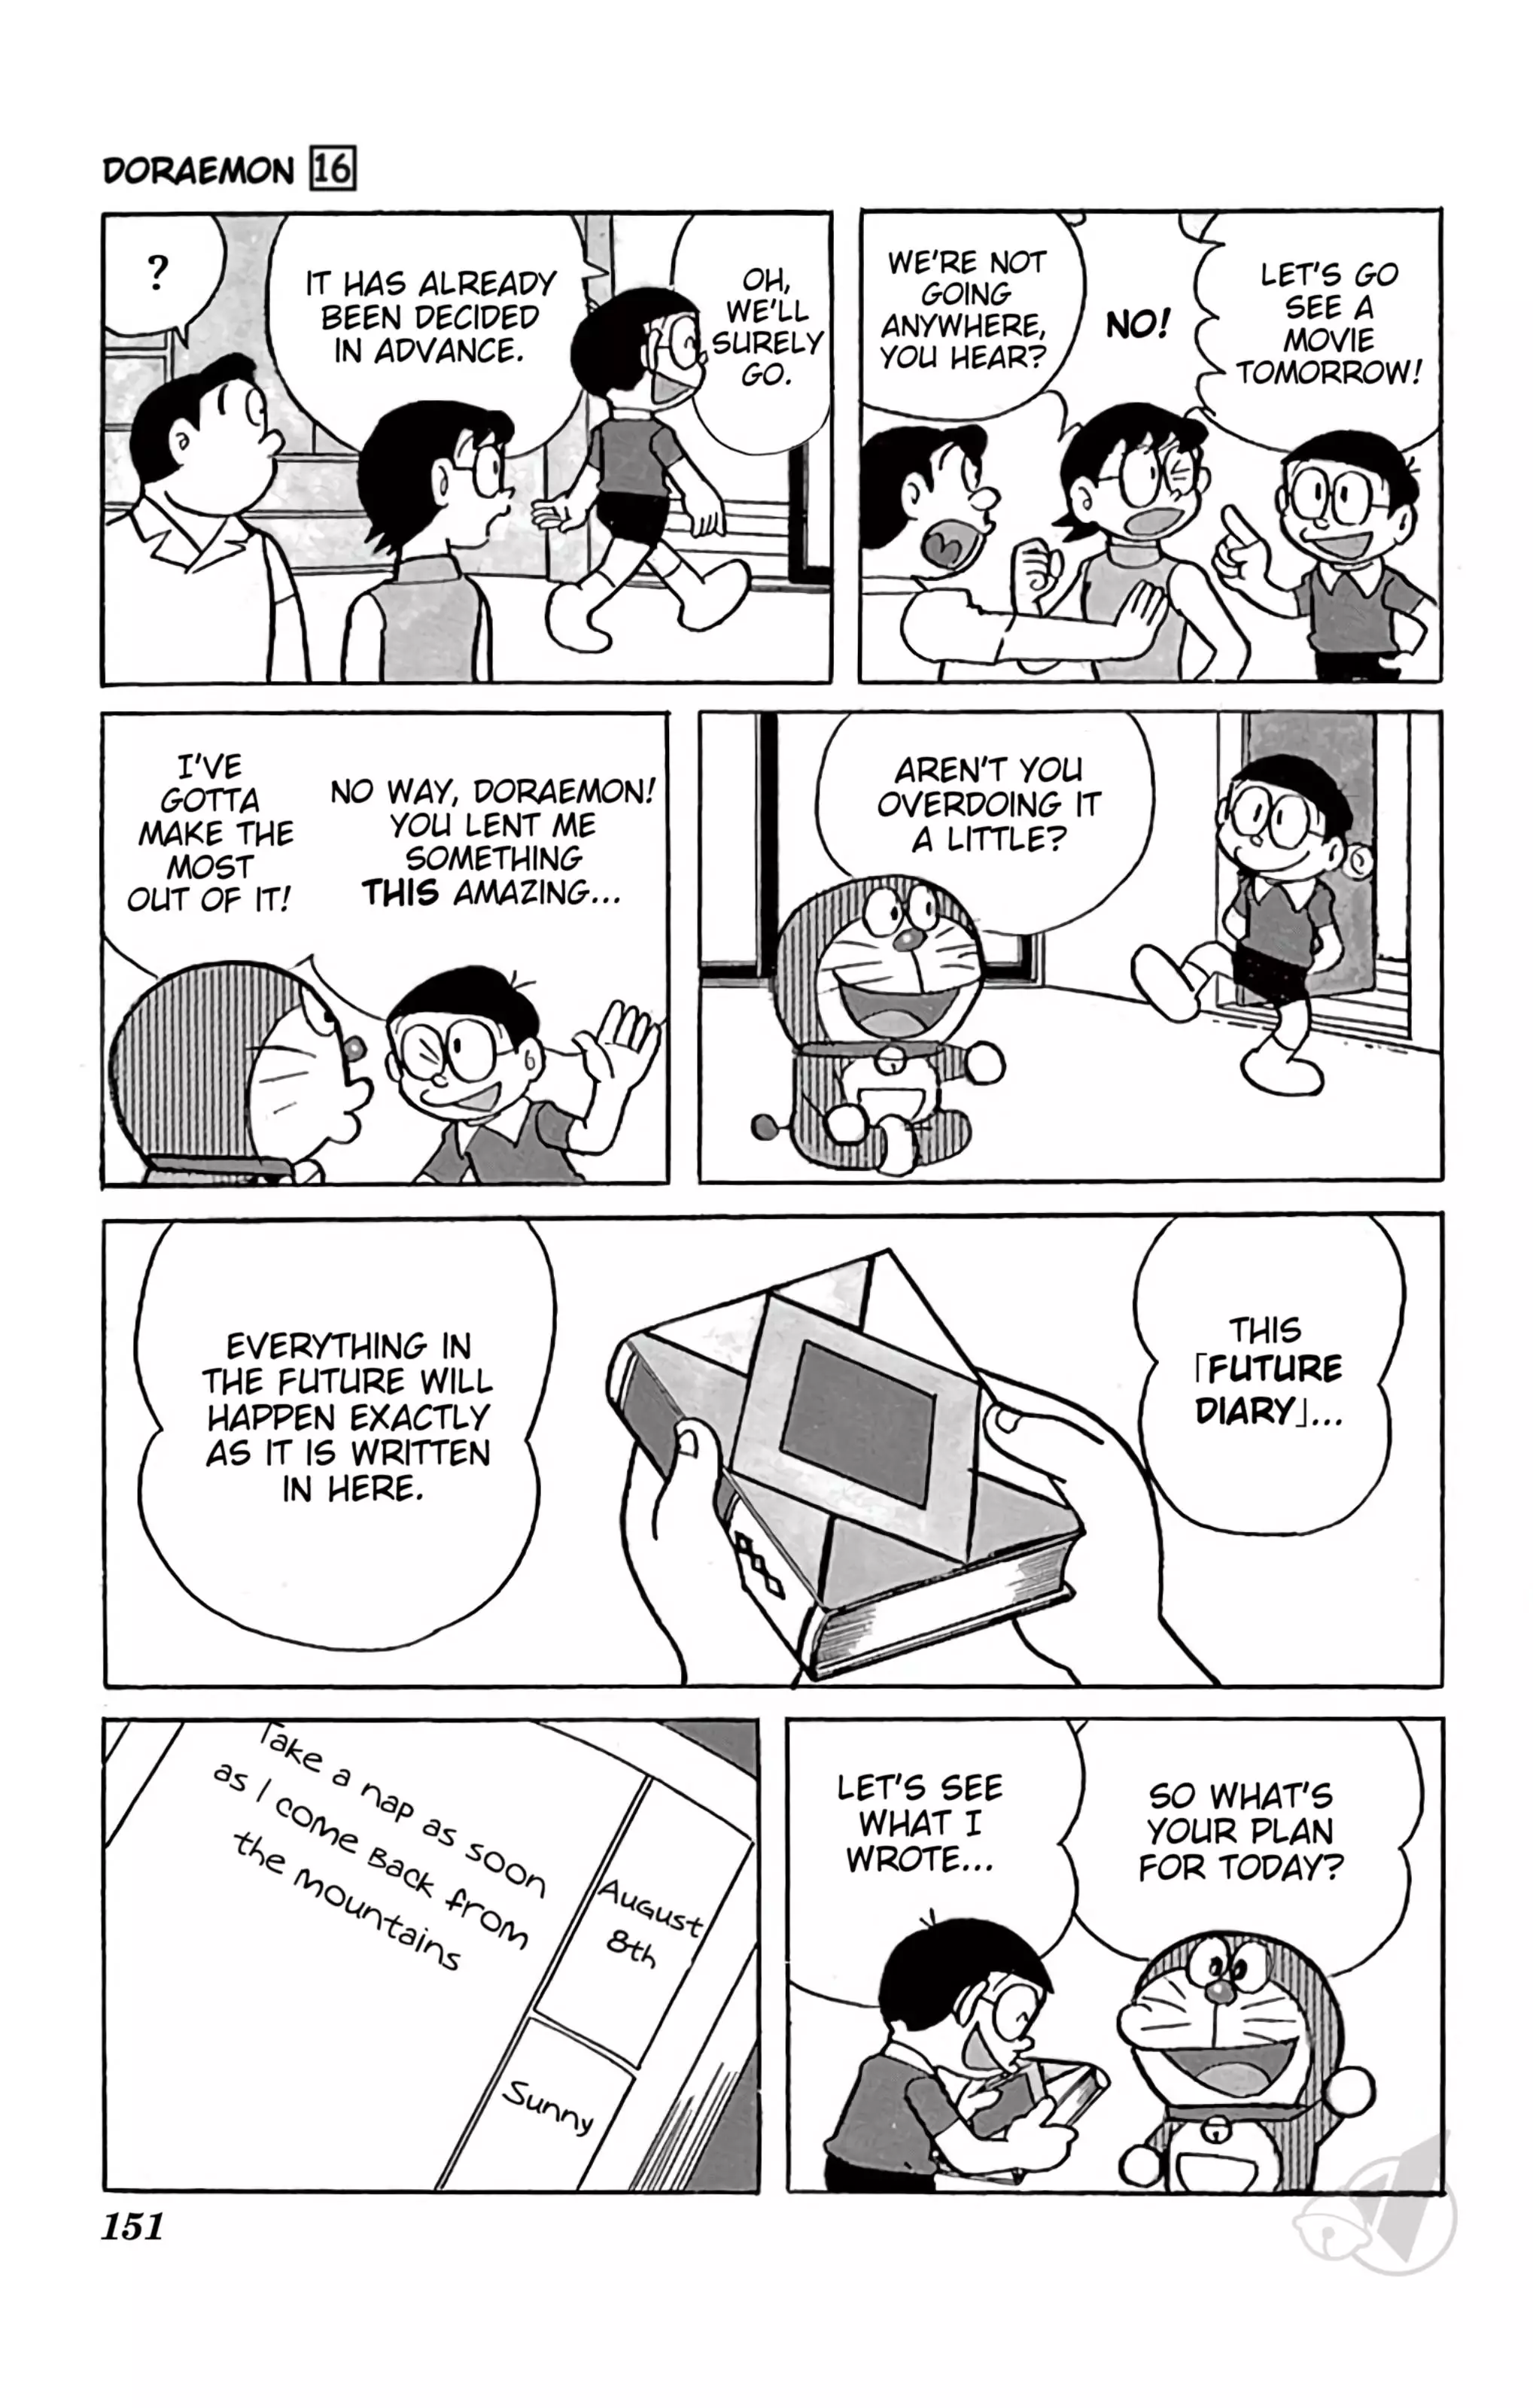 Doraemon - 301 page 3-4249def4